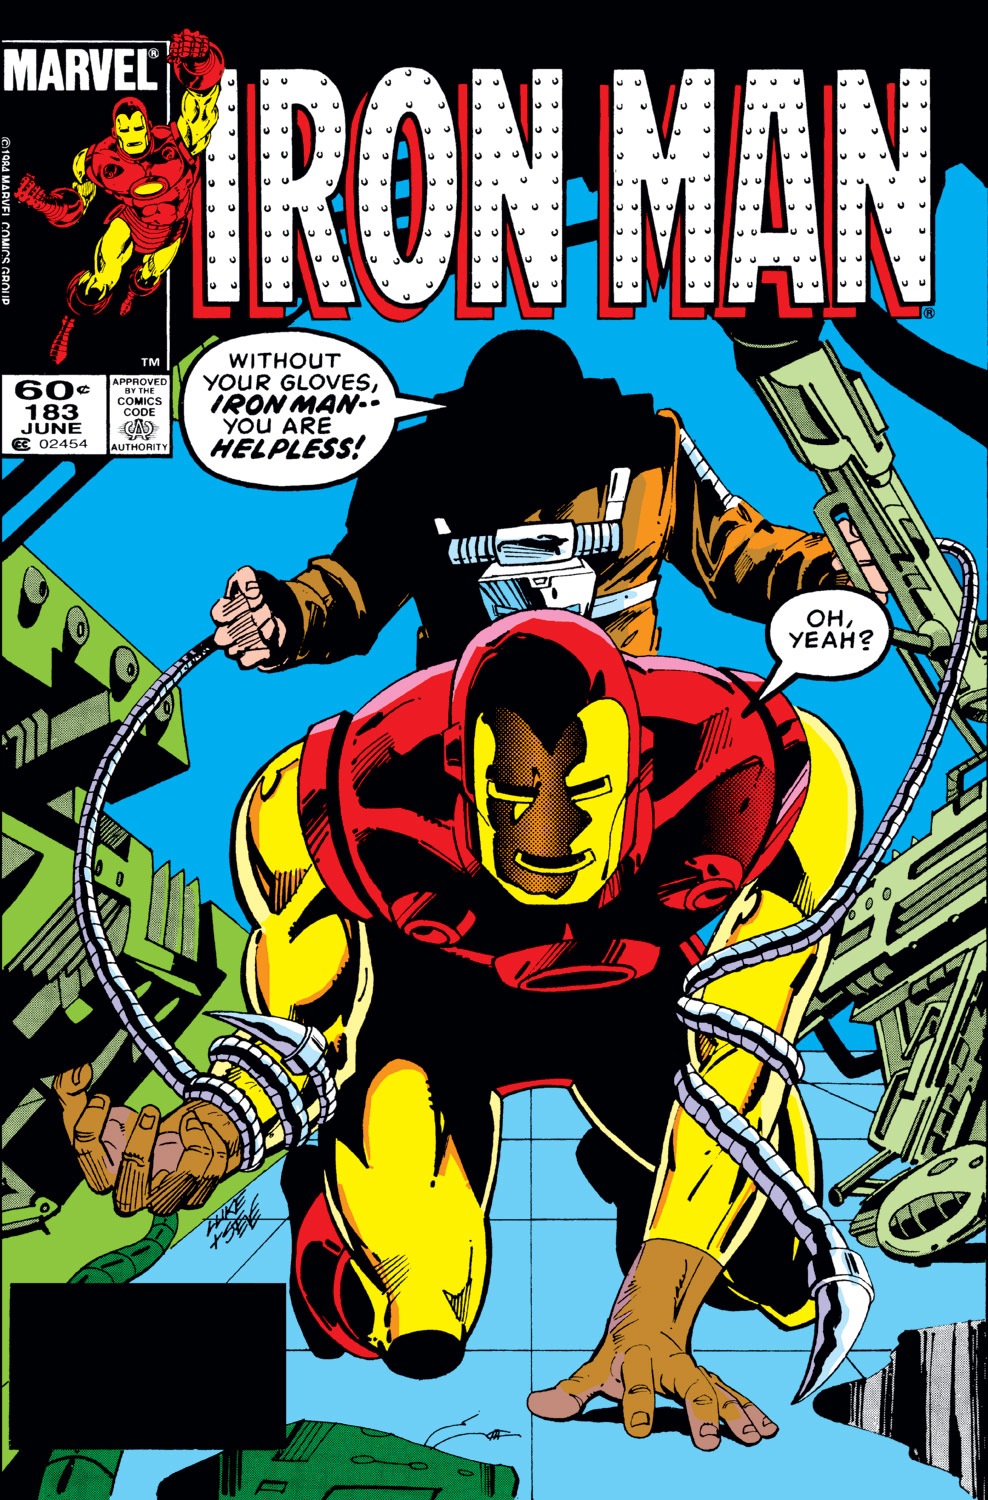 Homem de Ferro #183 (1984), Marvel Comics